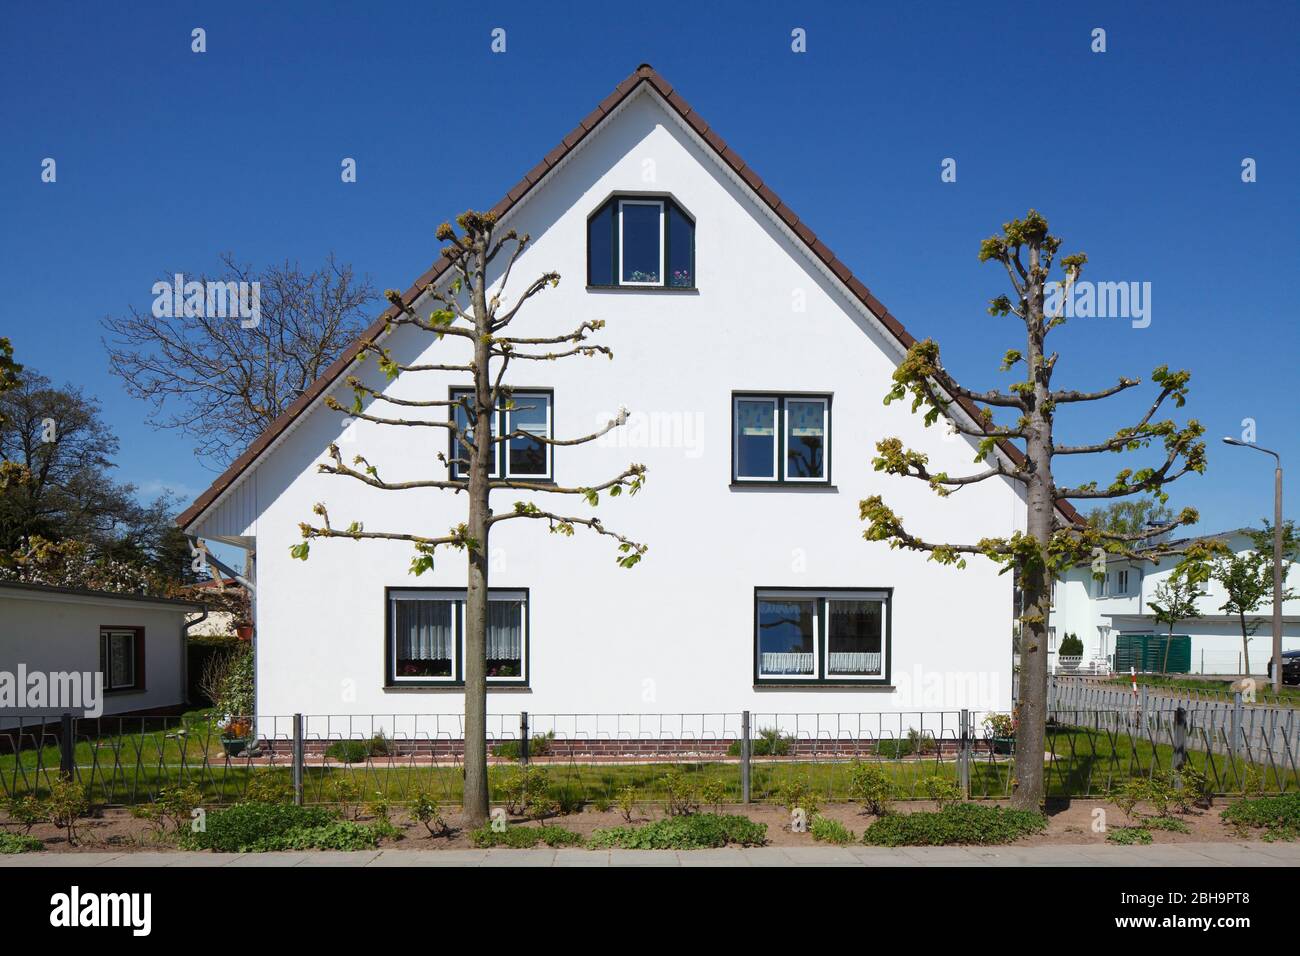 Modernes Wohngebäude, Einfamilienhaus, Binz auf Rügen, Insel Rügen, Mecklenburg-Vorpommern, Deutschland, Europa Stock Photo